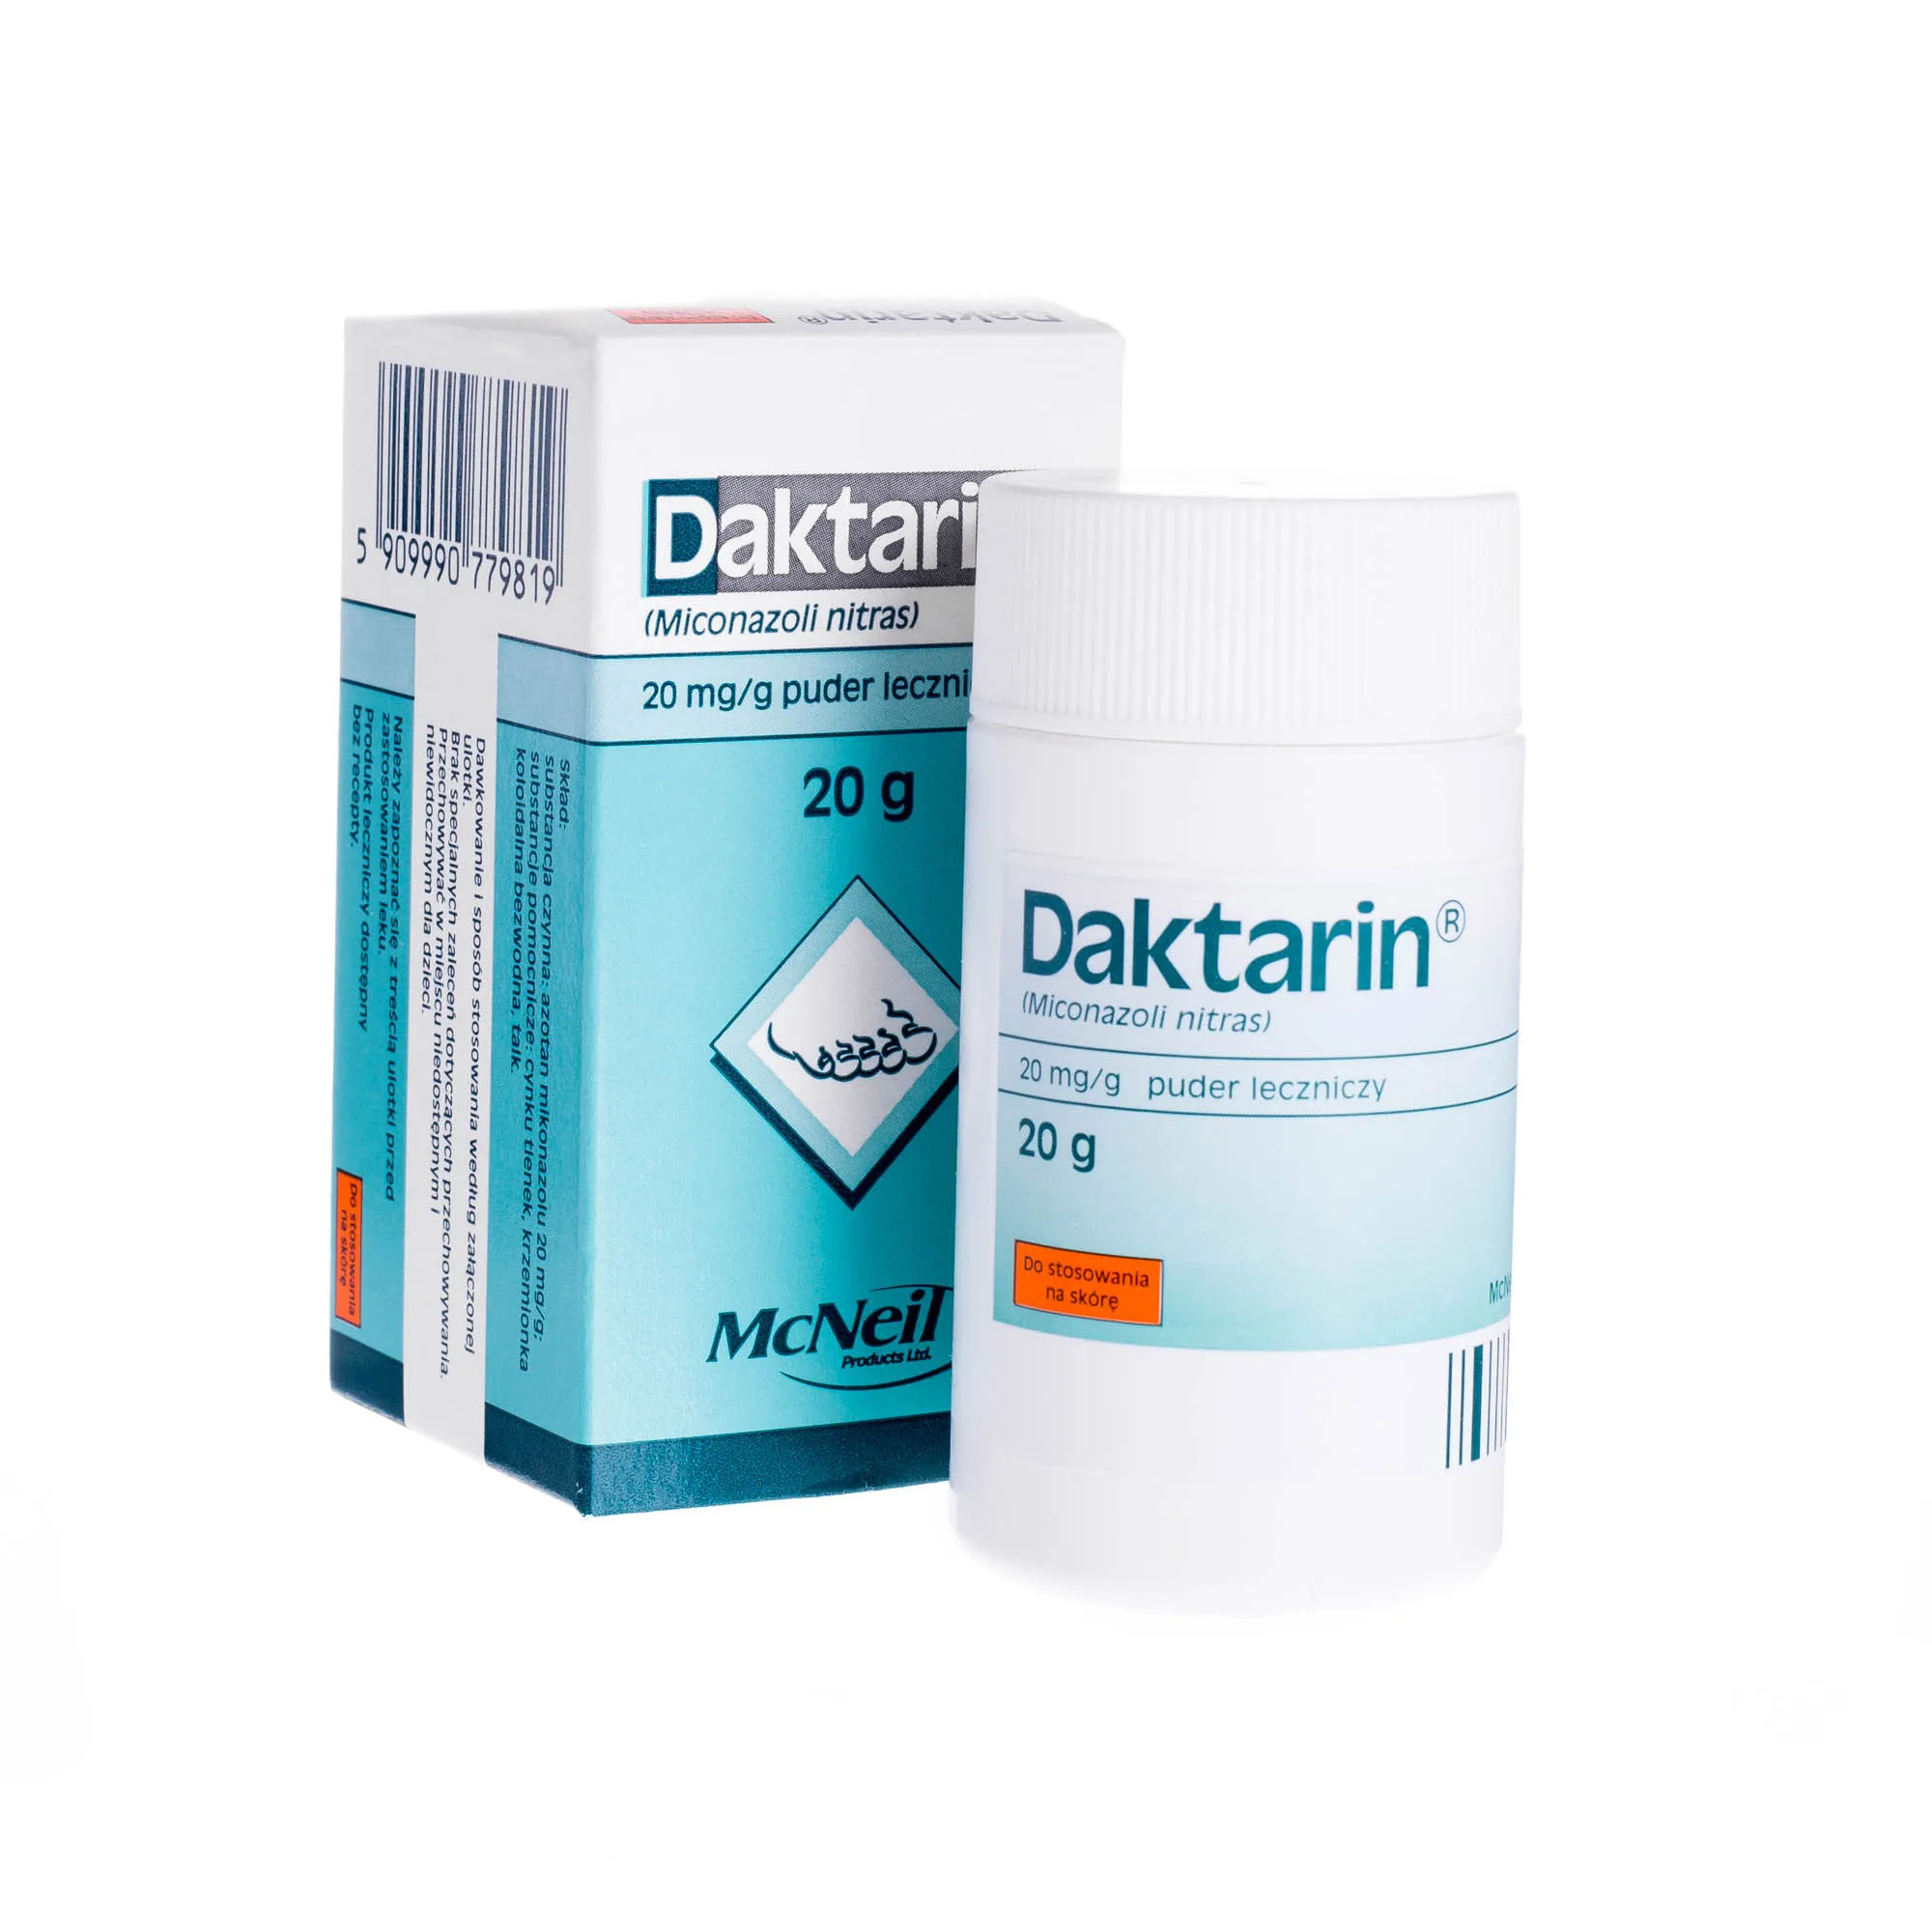 Daktarin 20 mg/g - puder leczniczy działający przeciwgrzybiczo, 20 g